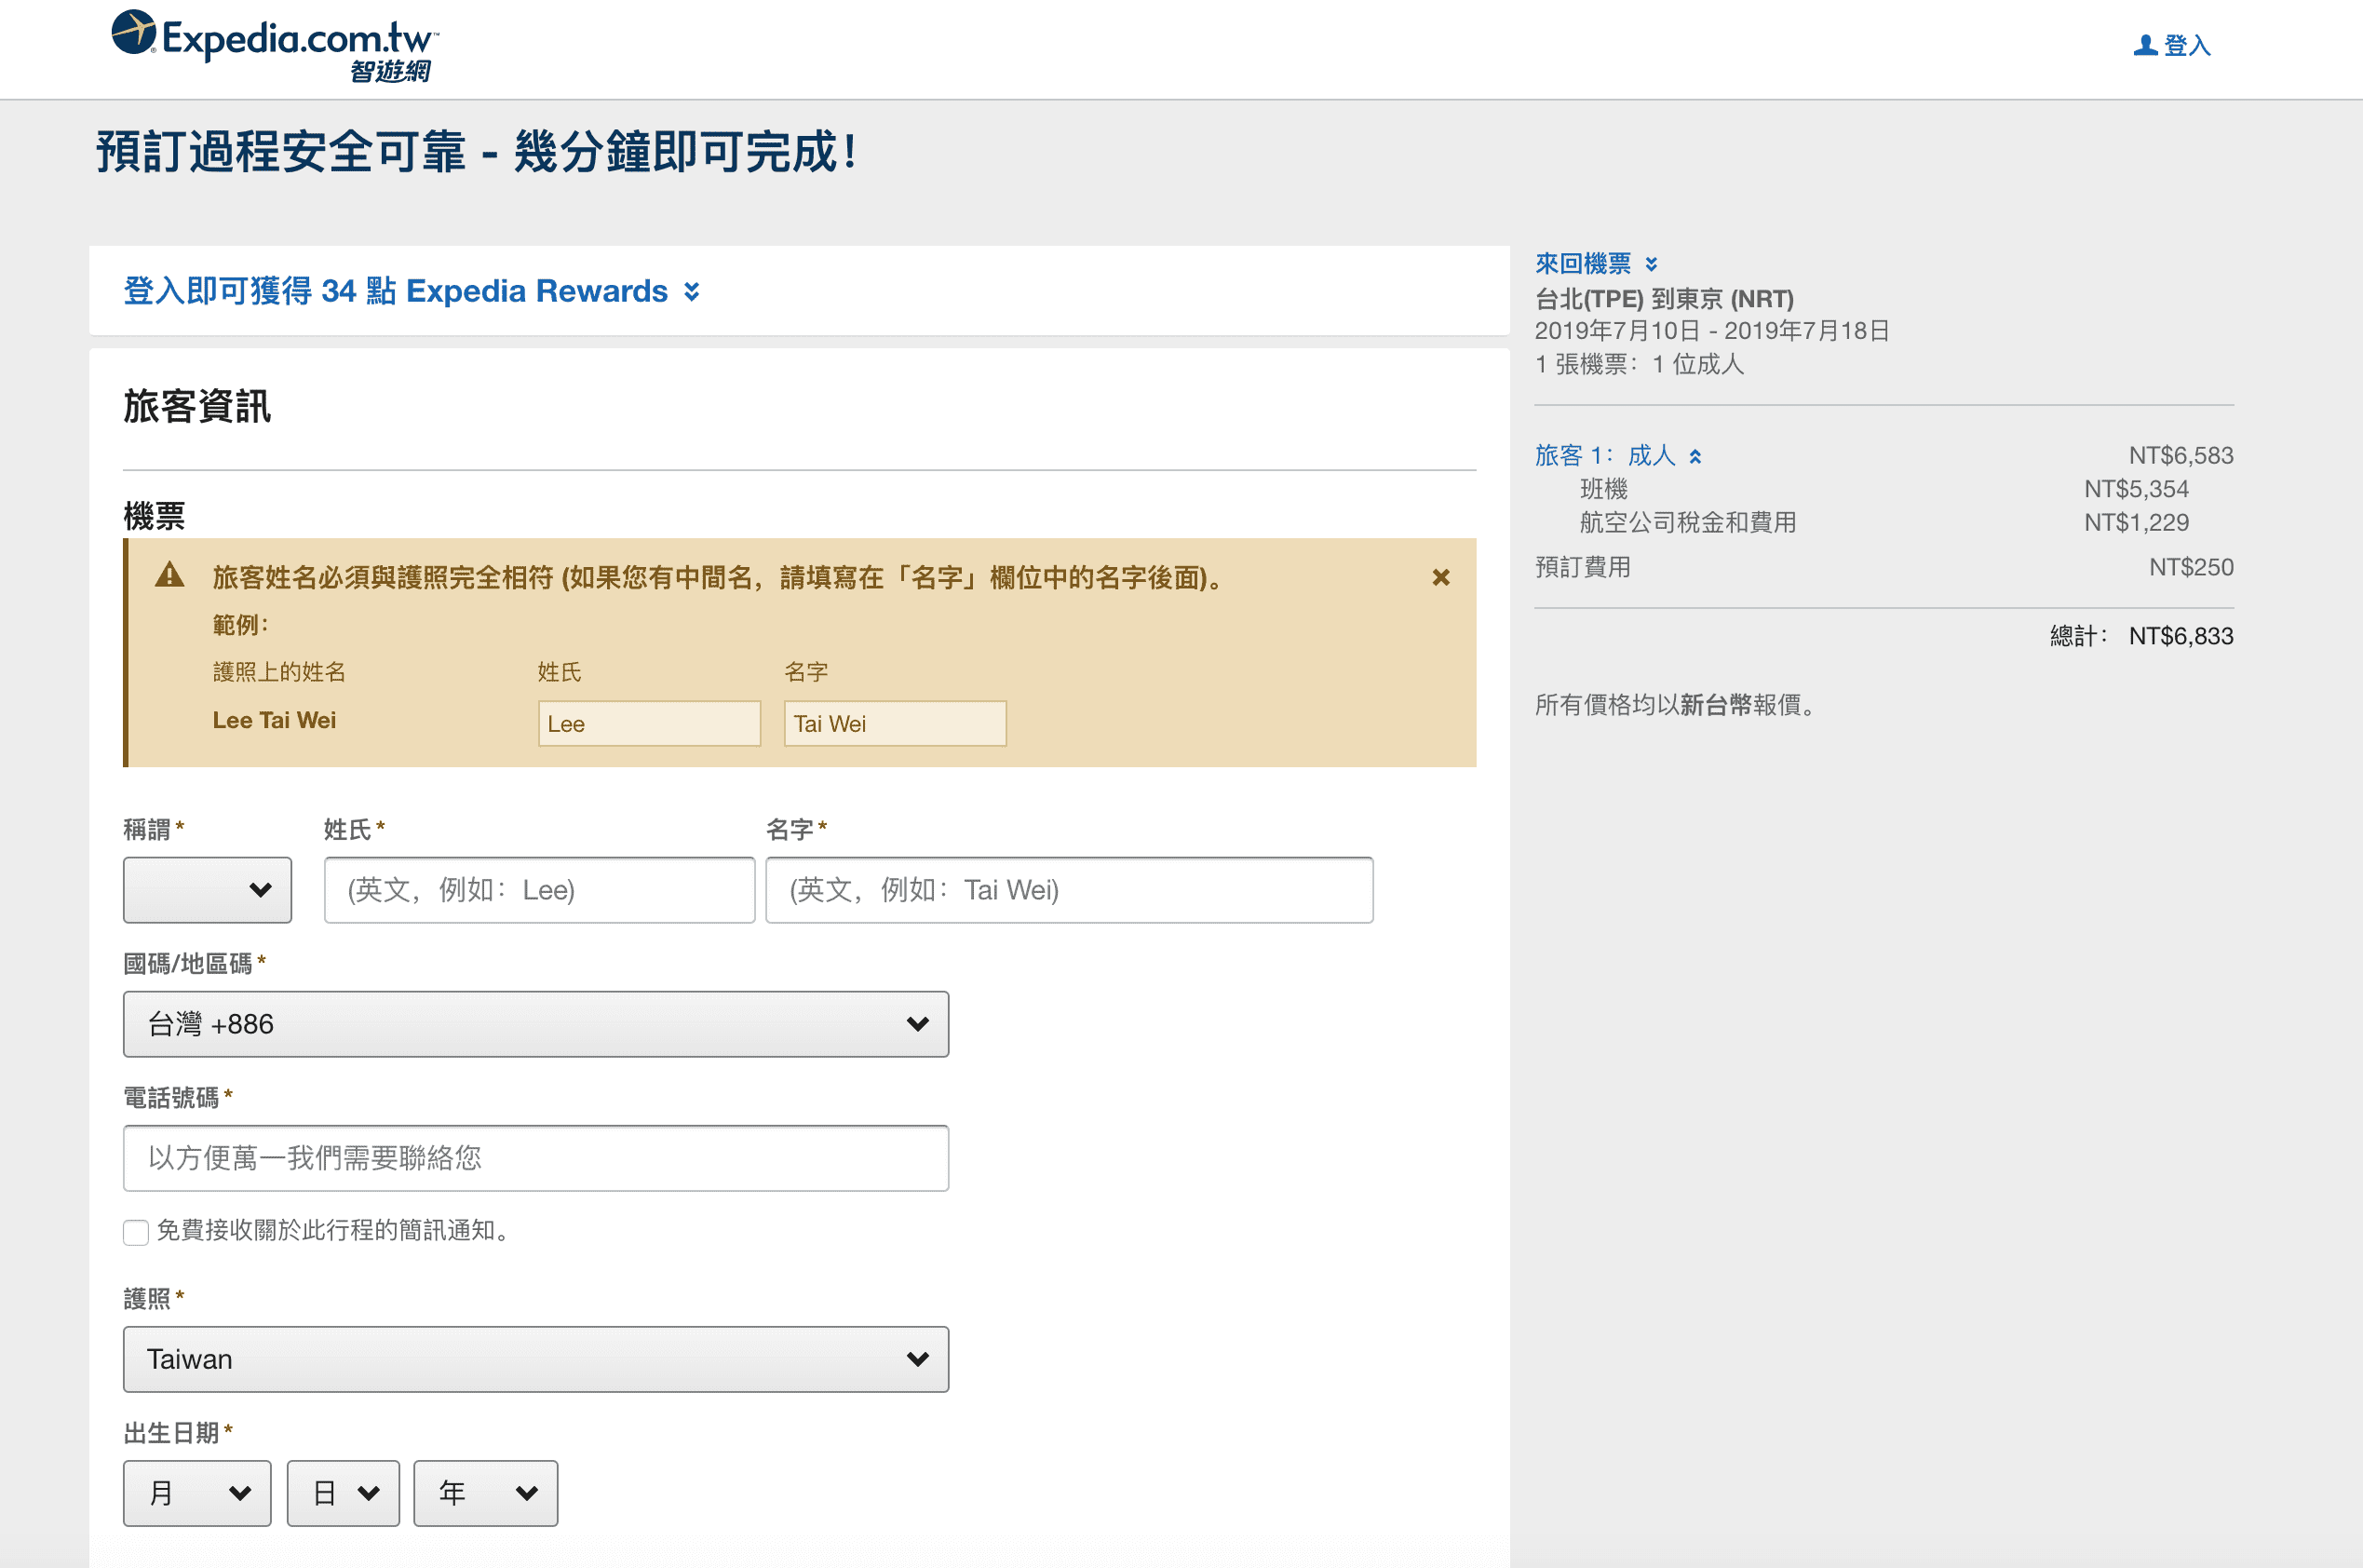 到底官網跟OTA訂票過程以及票價落差在哪裡？2019台北東京暑假機票，酷航可以考慮唷（查票：107.9.2）